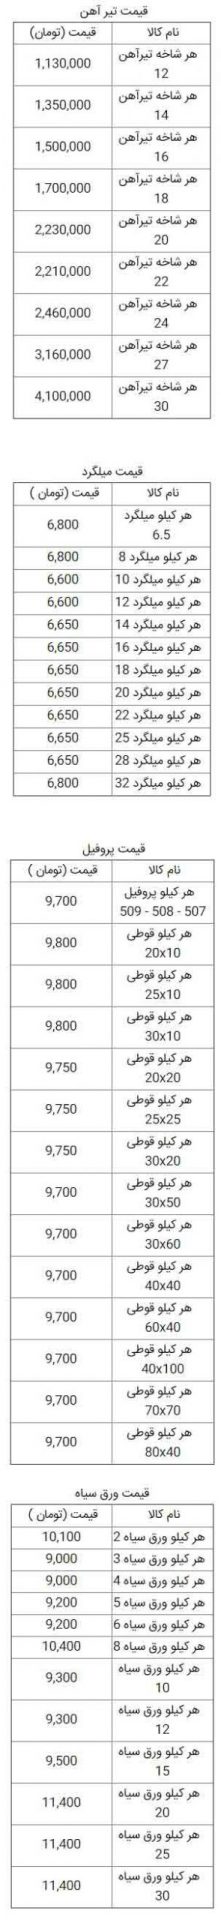 قیمت روز آهن آلات ساختمانی 3 خرداد 99